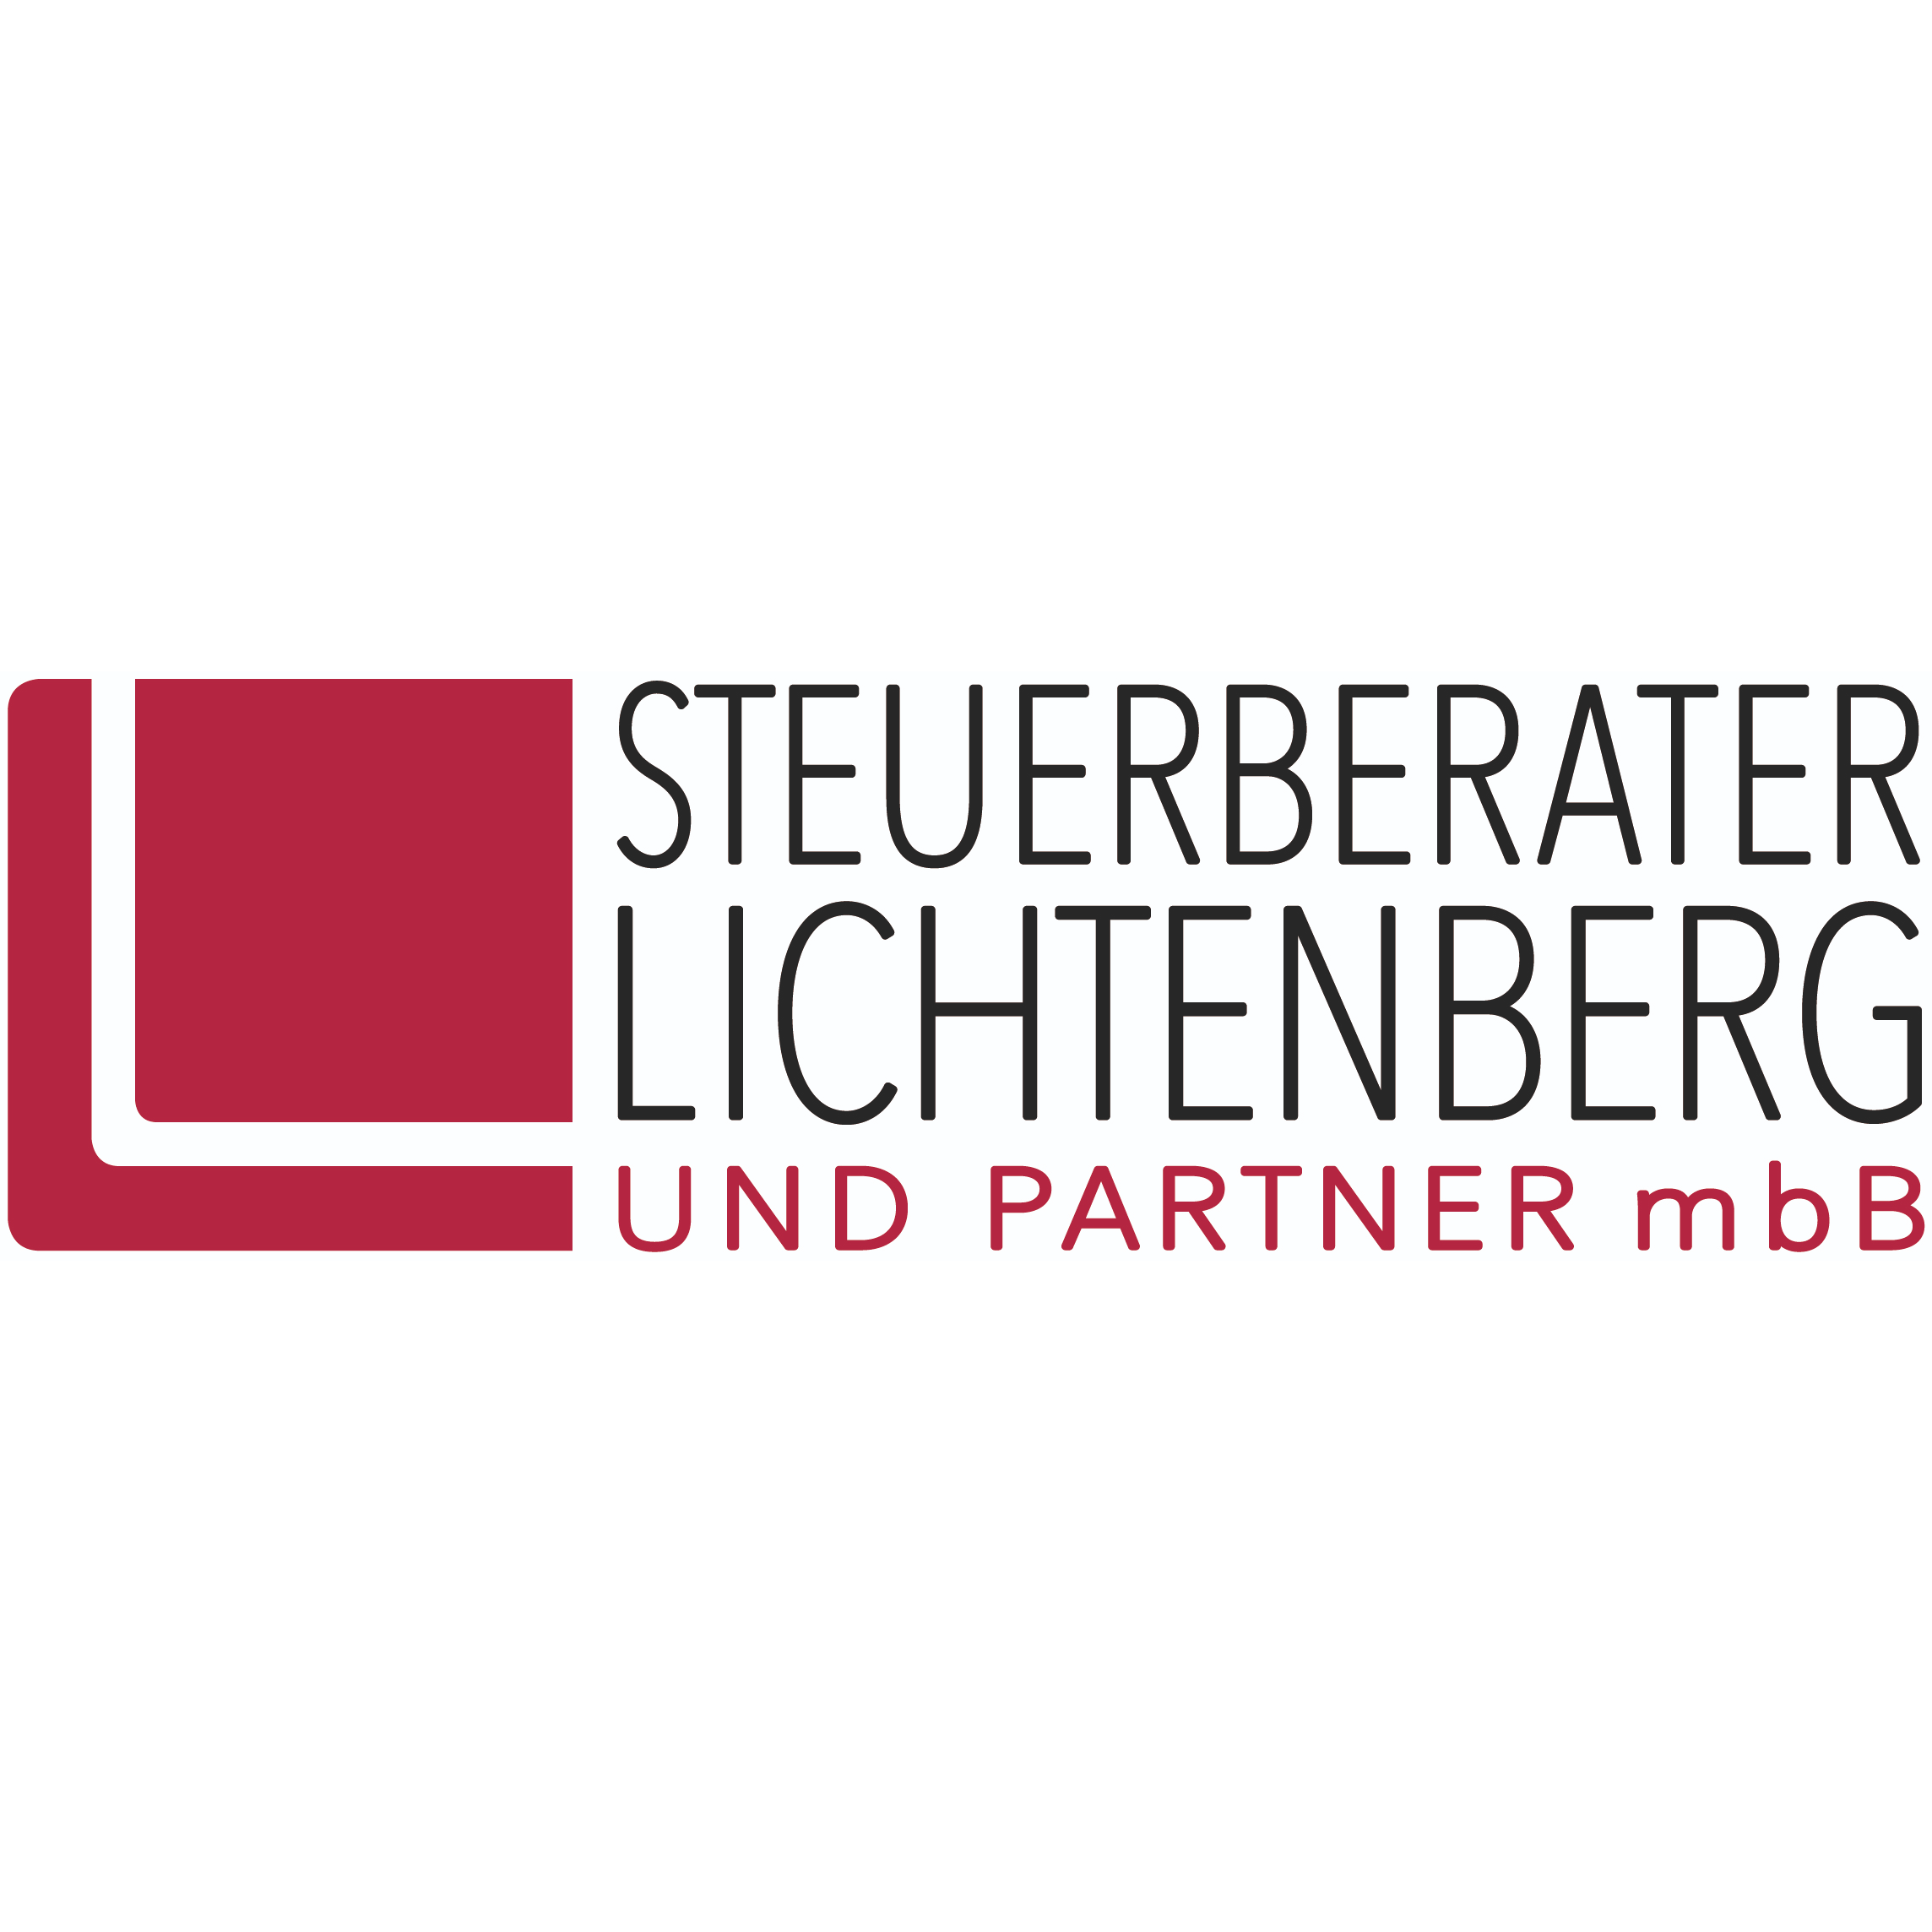 Steuerberater Lichtenberg und Partner mbB in Haslach im Kinzigtal - Logo